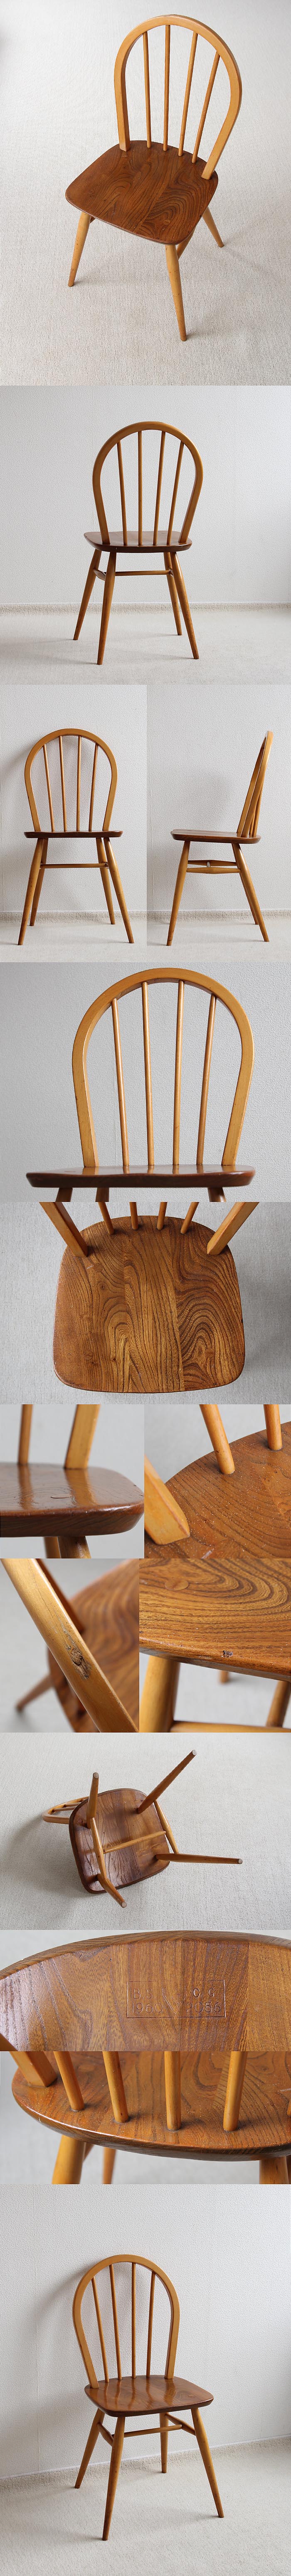 イギリス アンティーク アーコールチェア 木製椅子 ERCOL ヴィンテージ 家具 「フープバックチェア」V-692